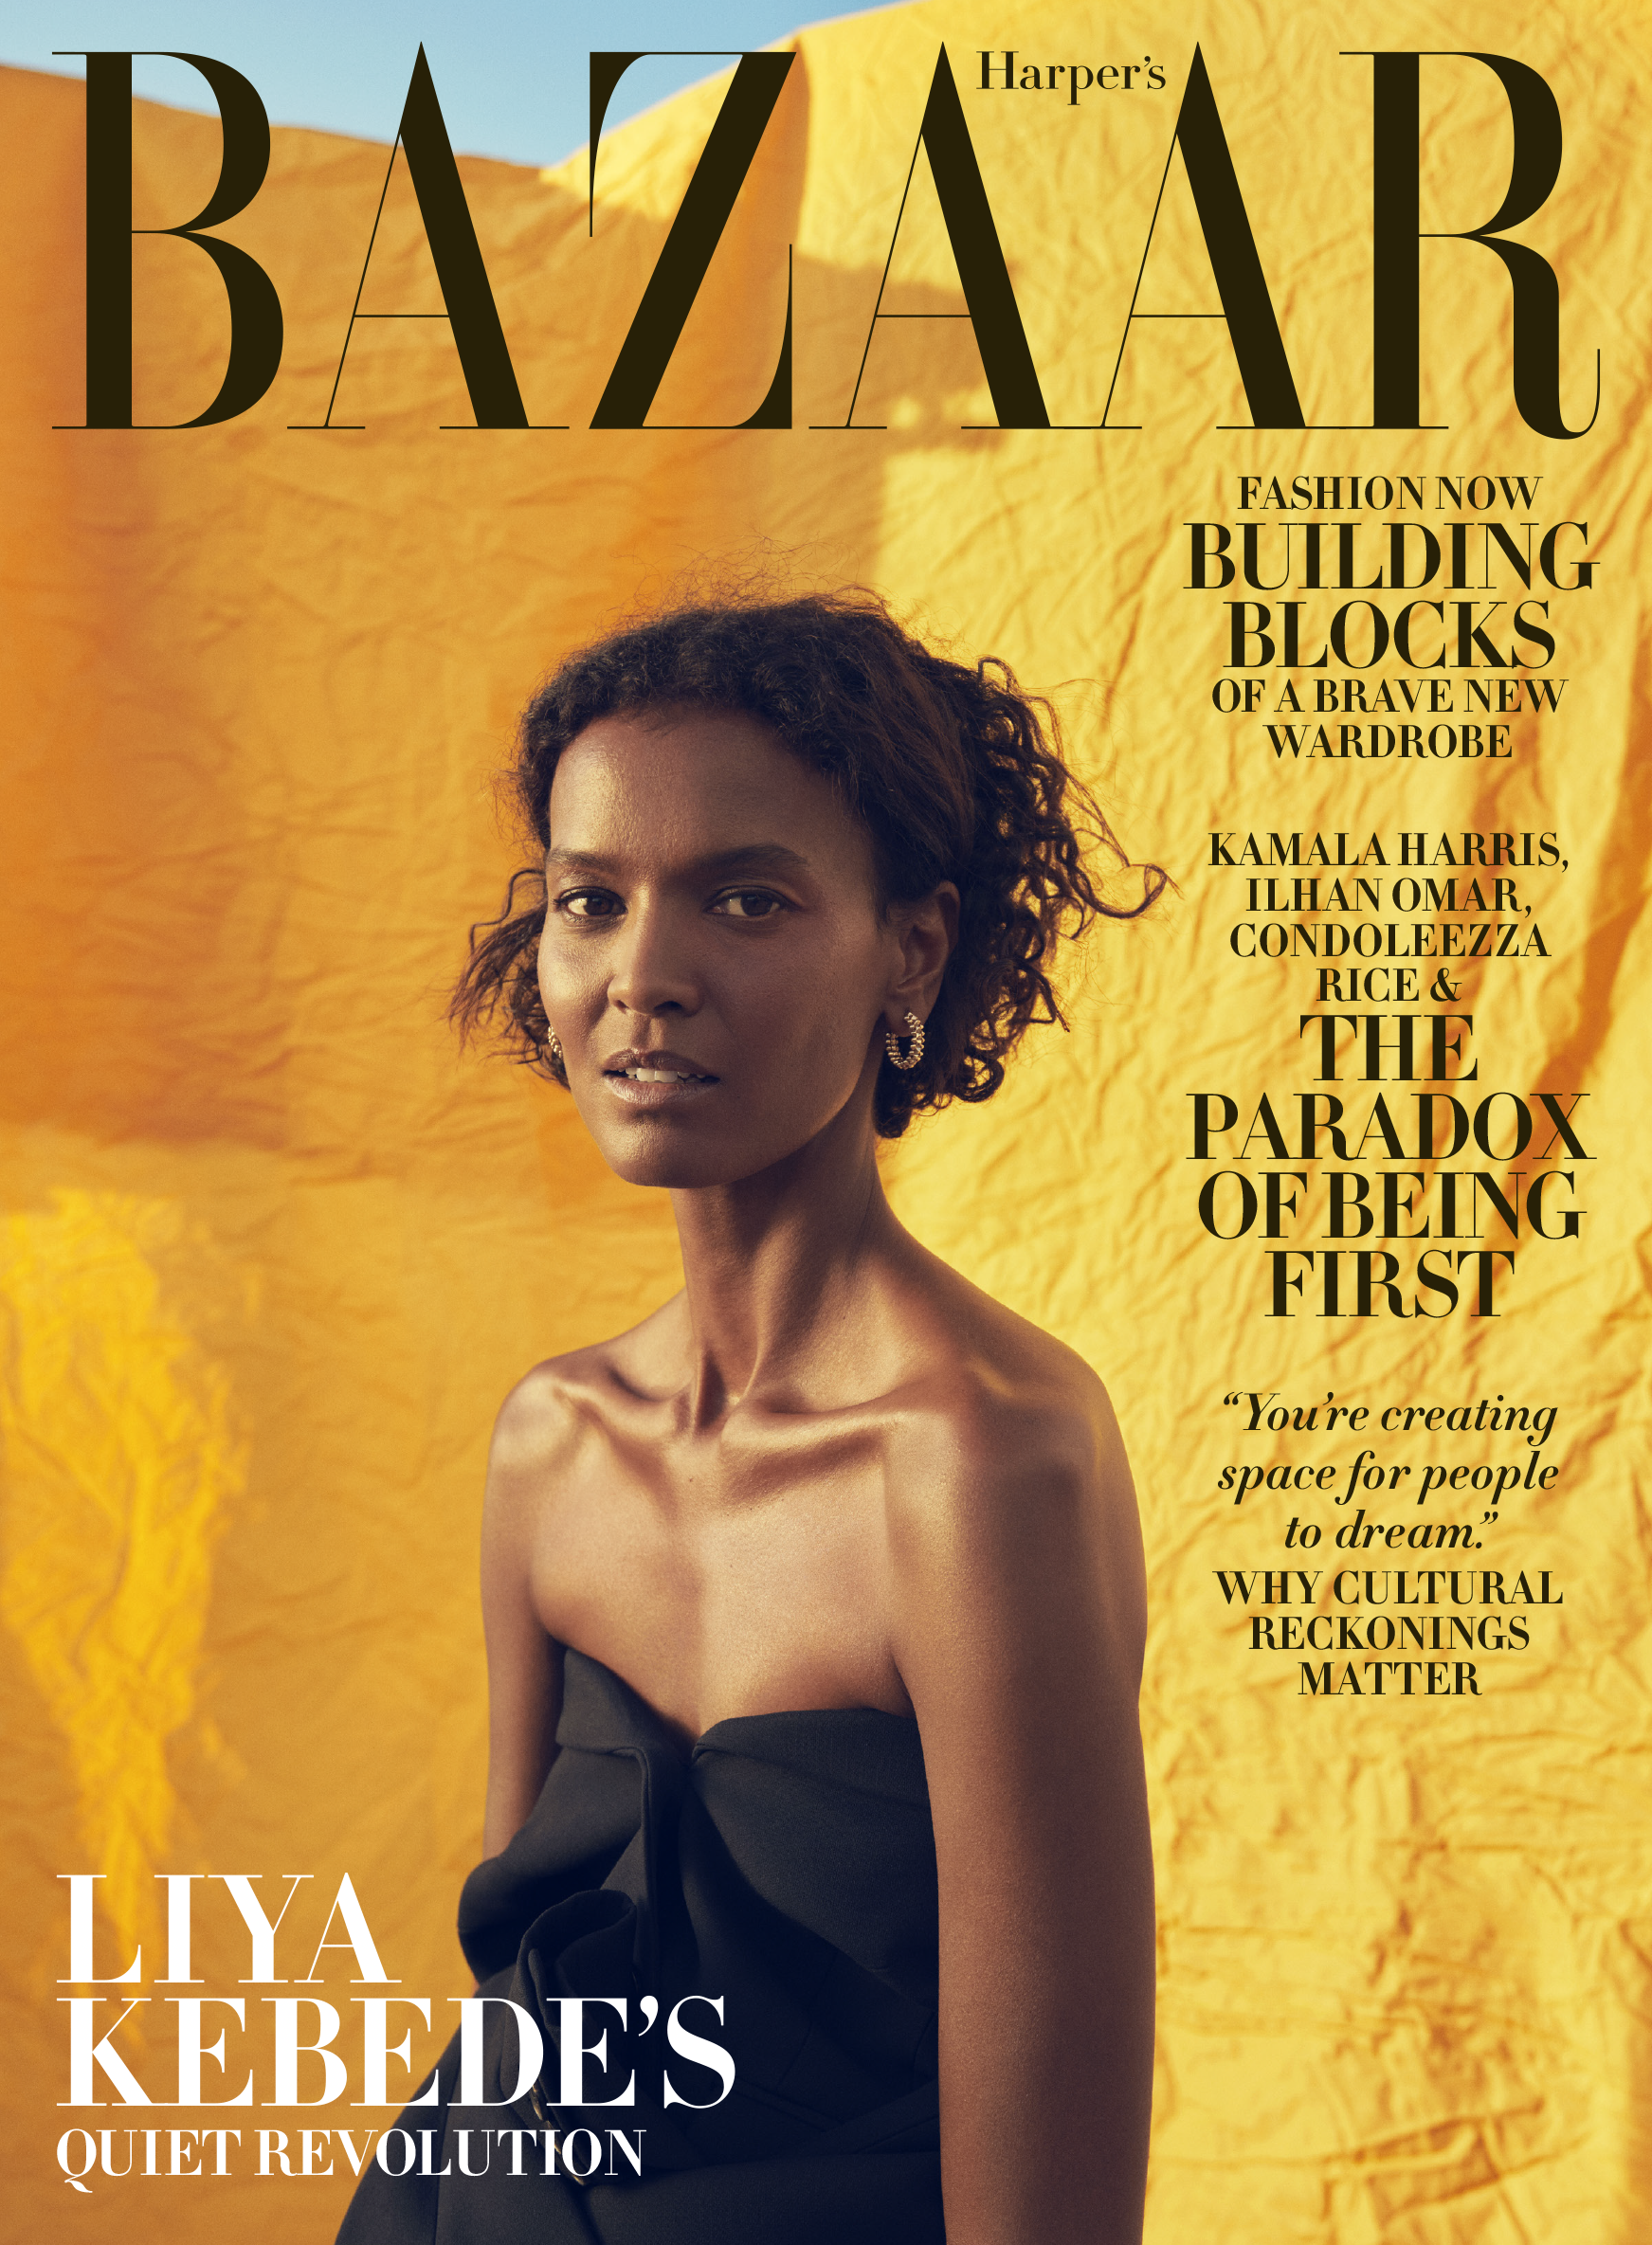 Bazaar India cover page Louis Vuitton suit